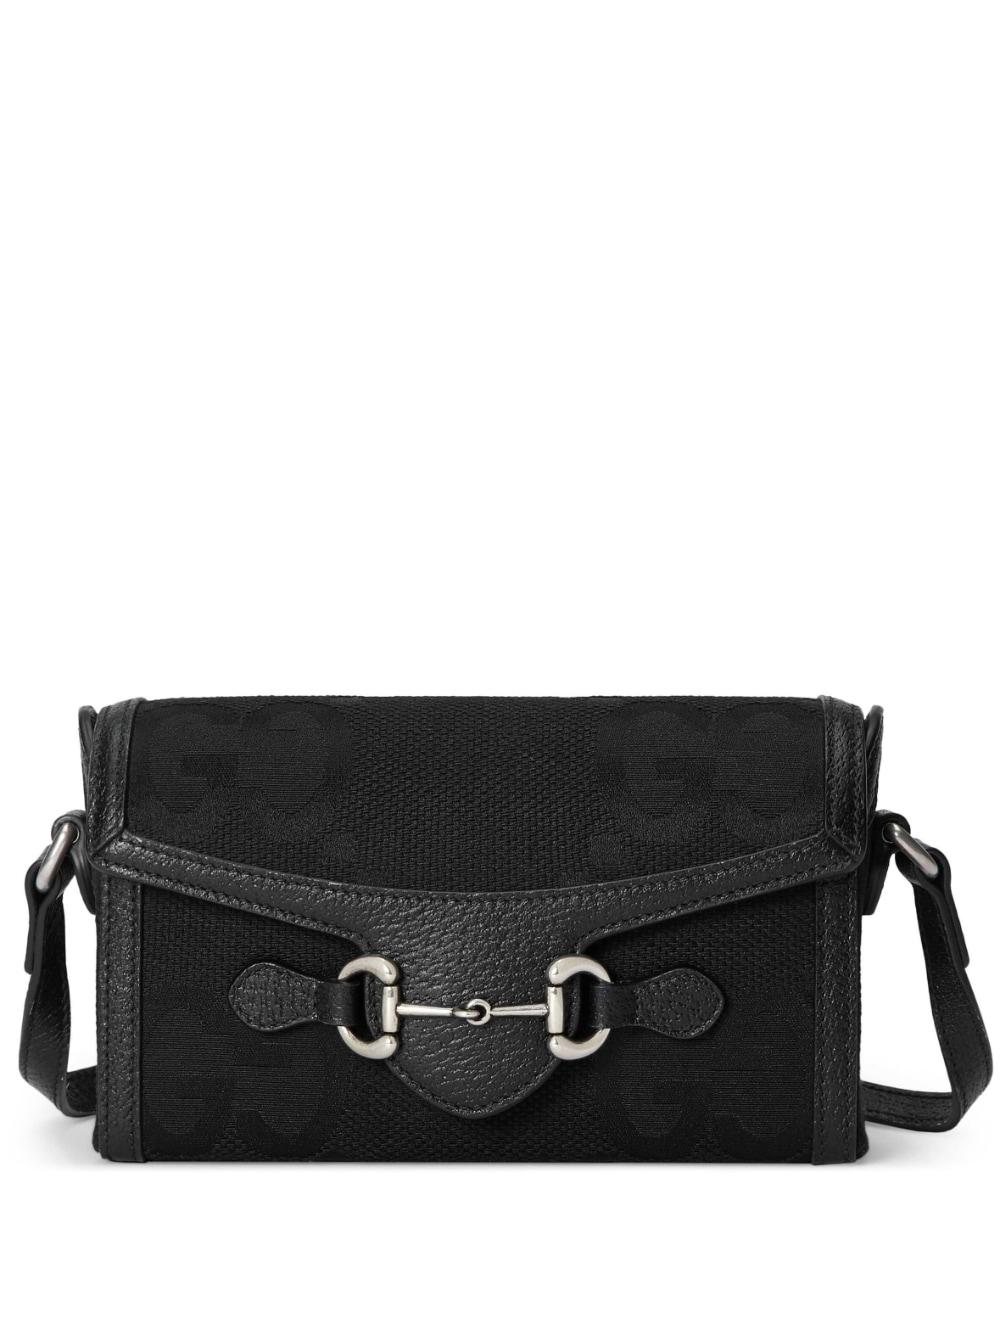 Gucci Horsebit 1955 Jumbo GG Messenger Bag in Black for Men | Lyst